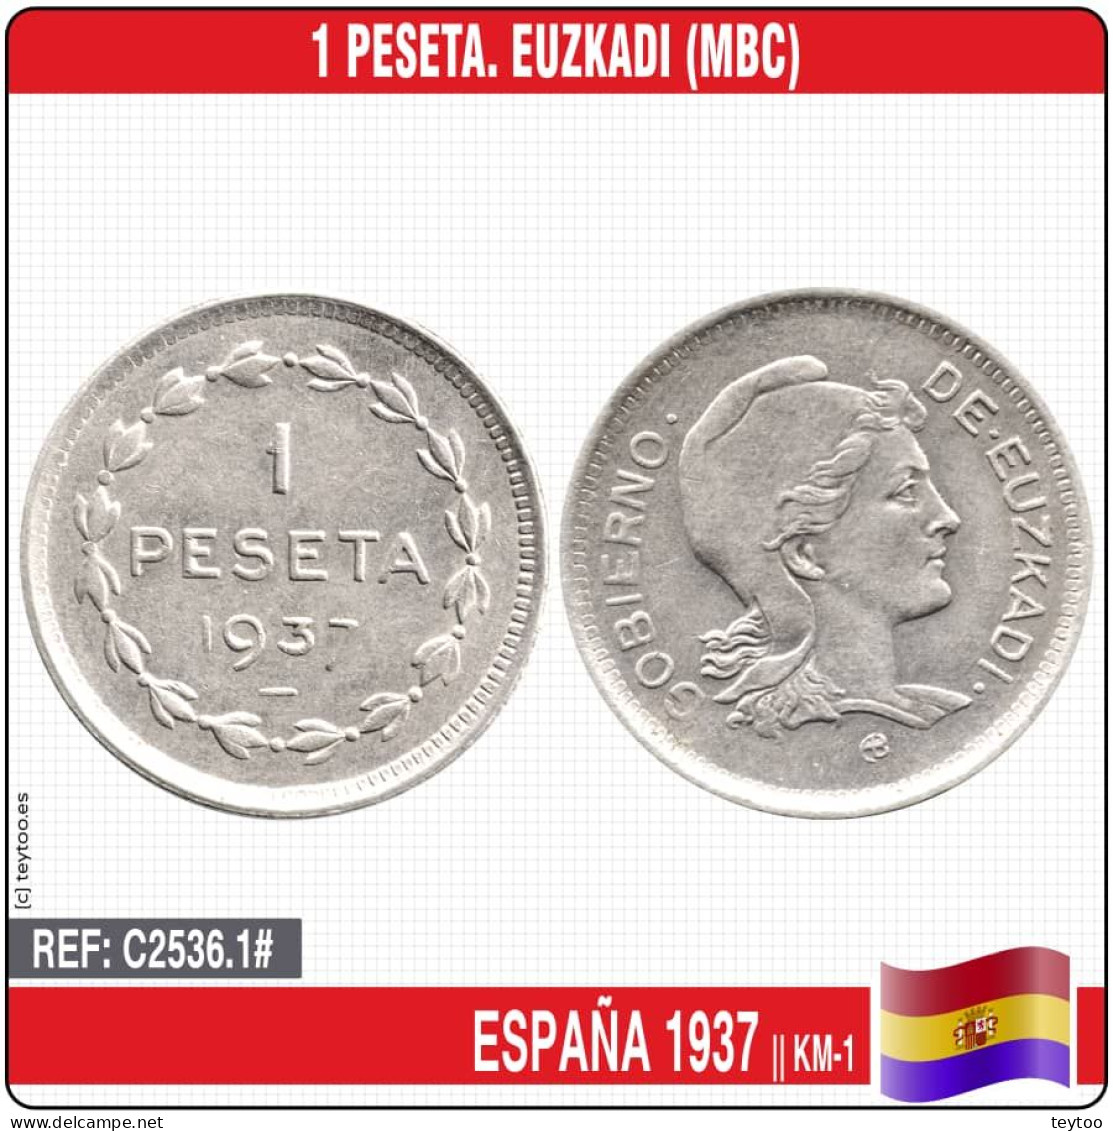 C2536.1# España 1937. 1 Peseta. Euzkadi (MBC) KM-1 - Republikanische Zone